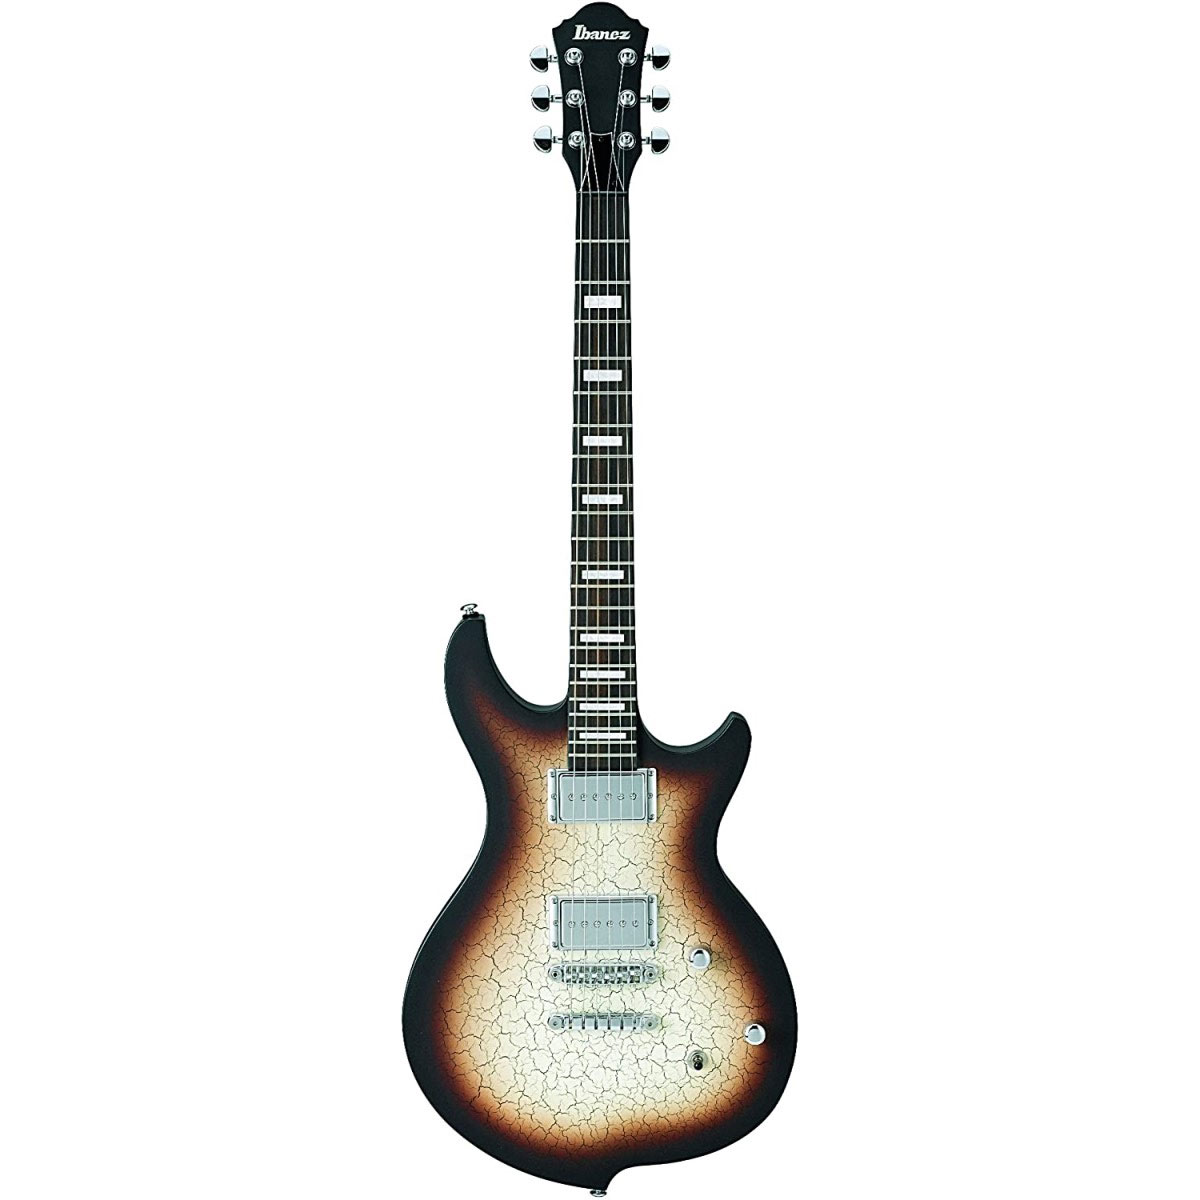 Comprar Guitarra Electrica Ibanez al mejor precio en Prieto M�sica